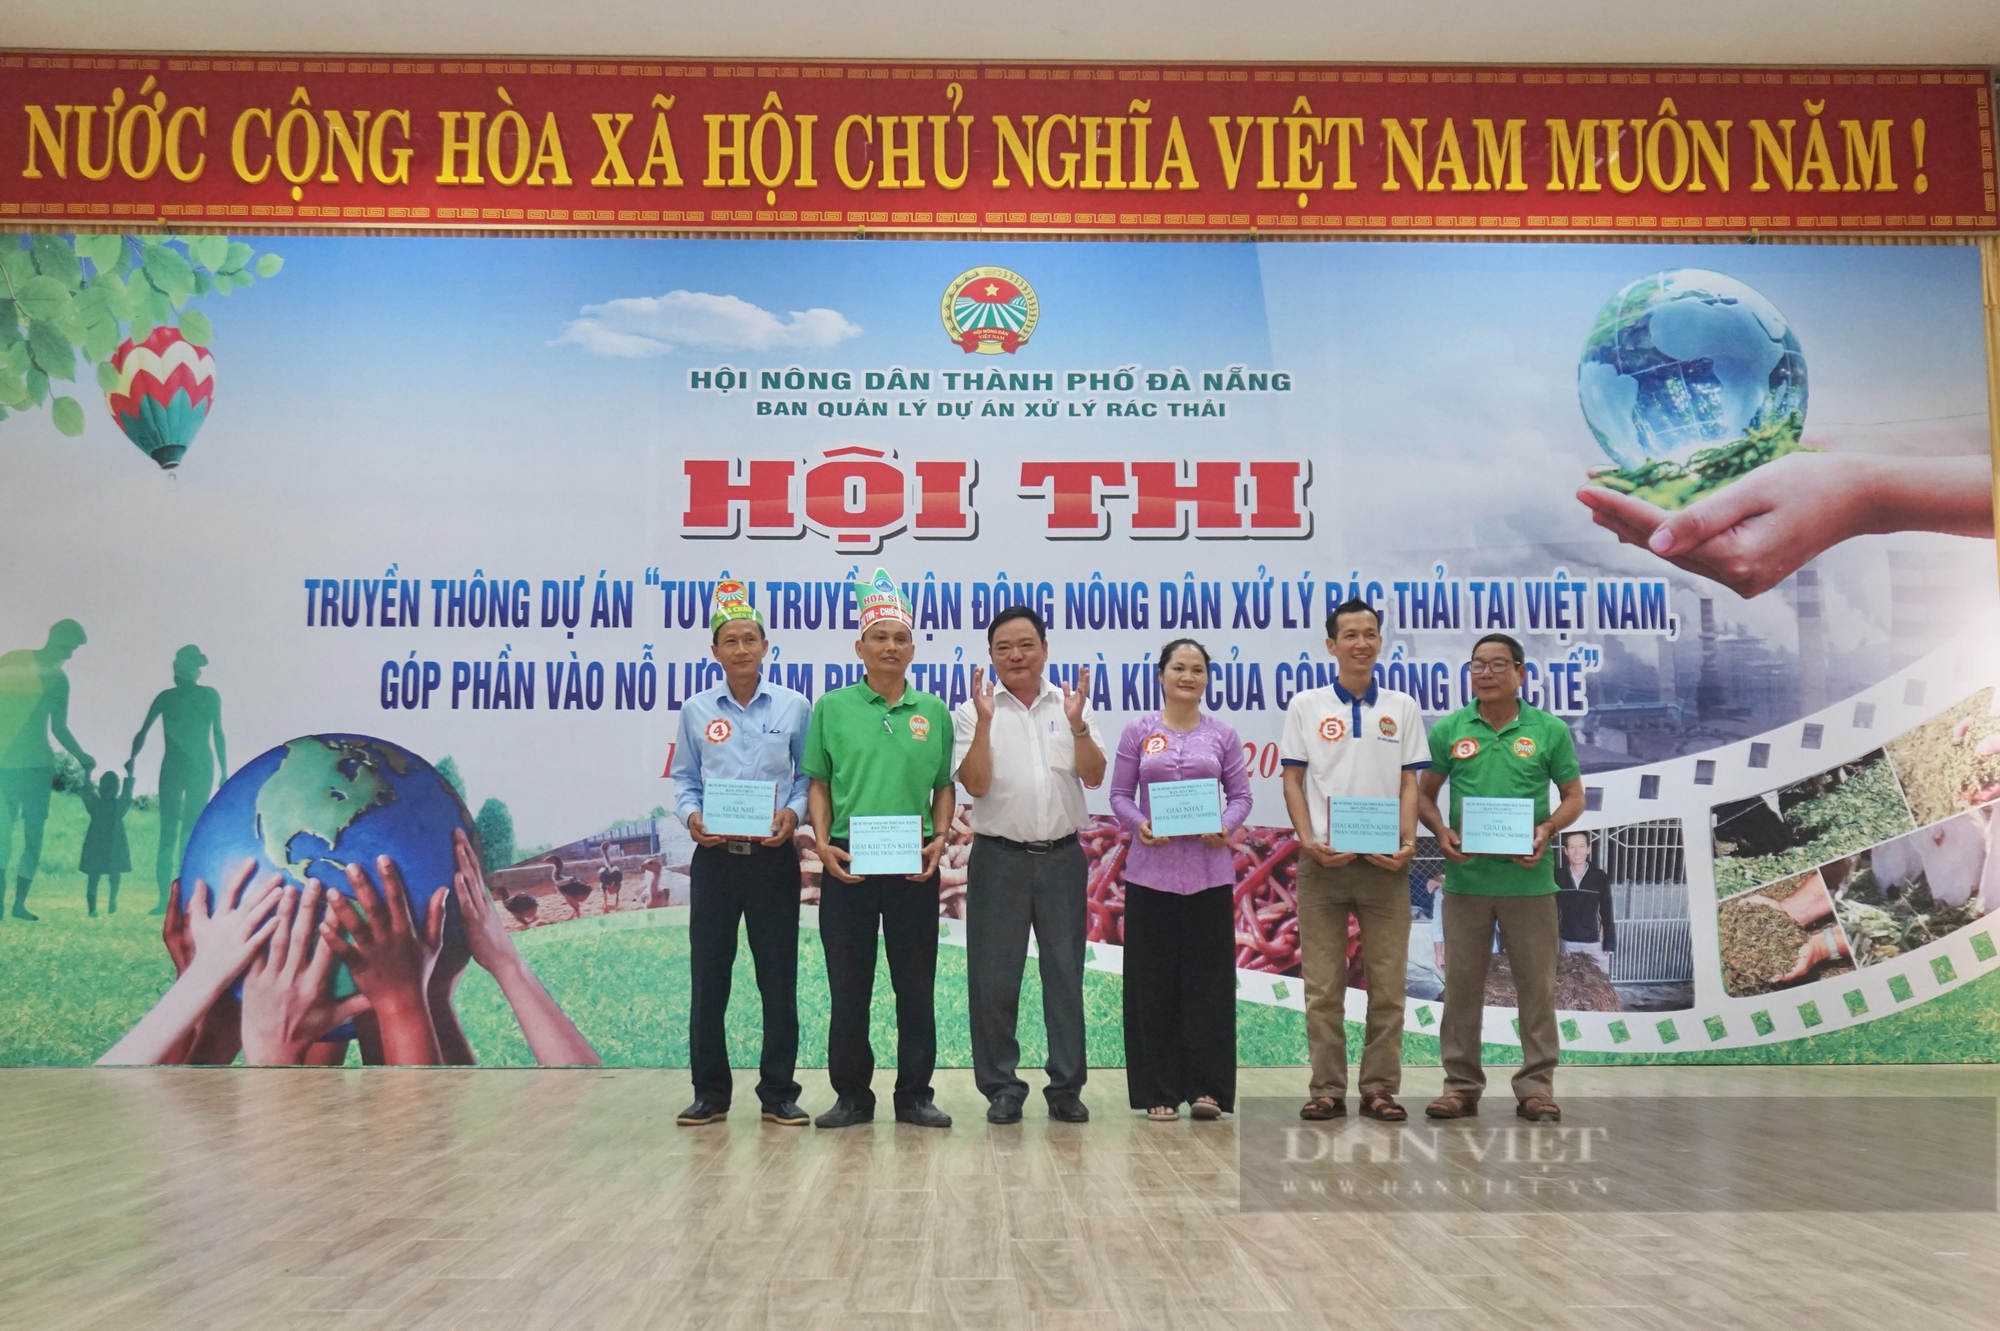 Đà Nẵng: Sôi nổi Hội thi tuyên truyền, vận động nông dân xử lý rác thải tại Việt Nam- Ảnh 4.